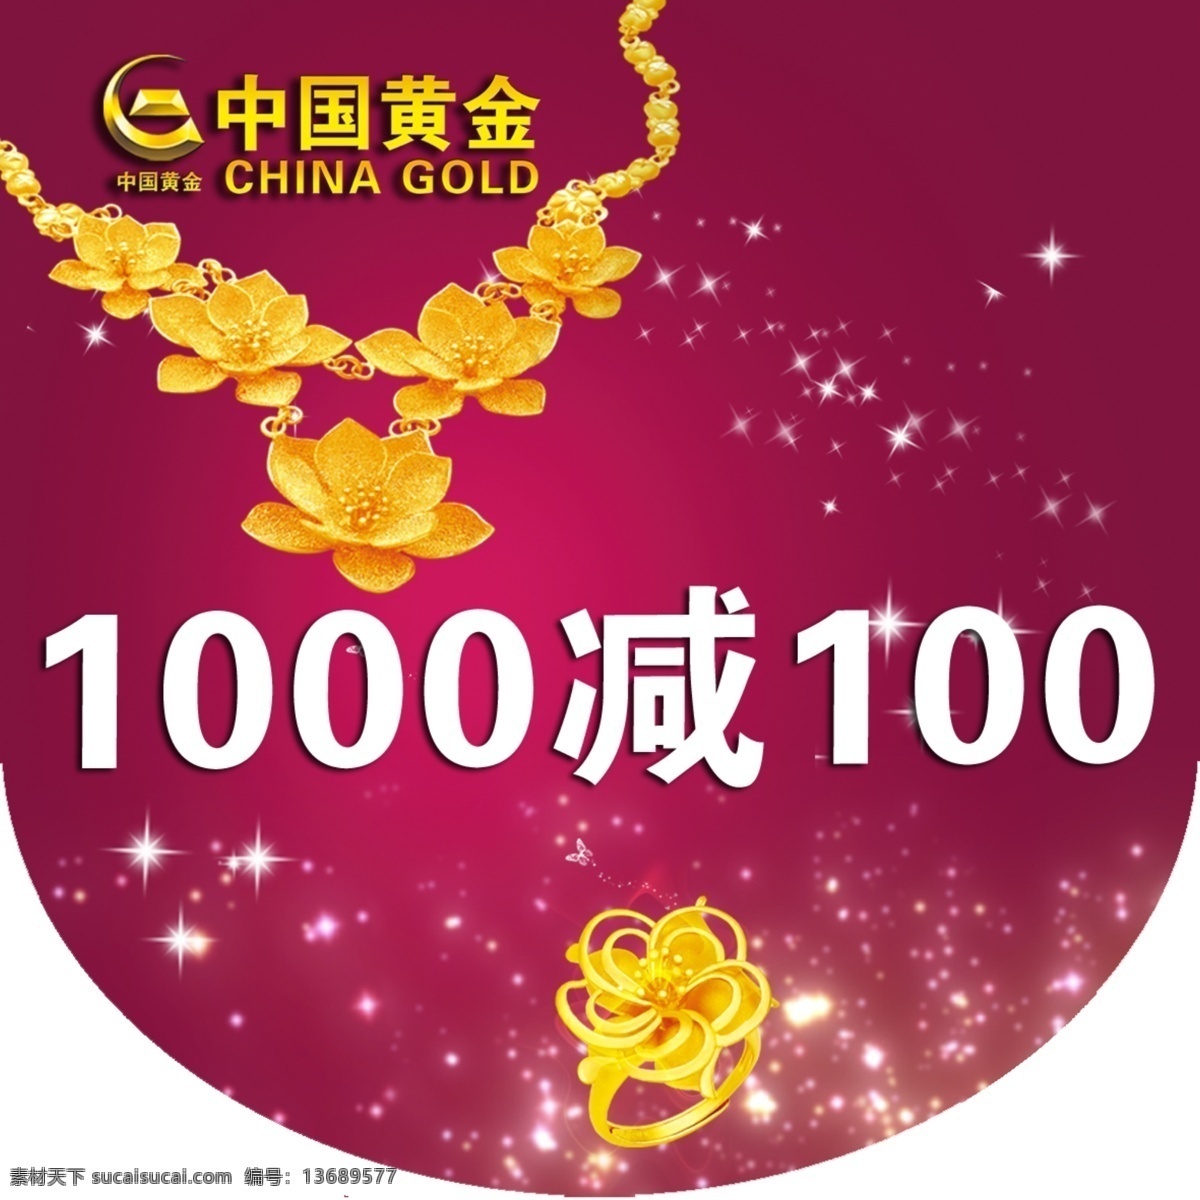 中国黄金 中国黄金标志 黄金项链 星光 广告设计模板 源文件